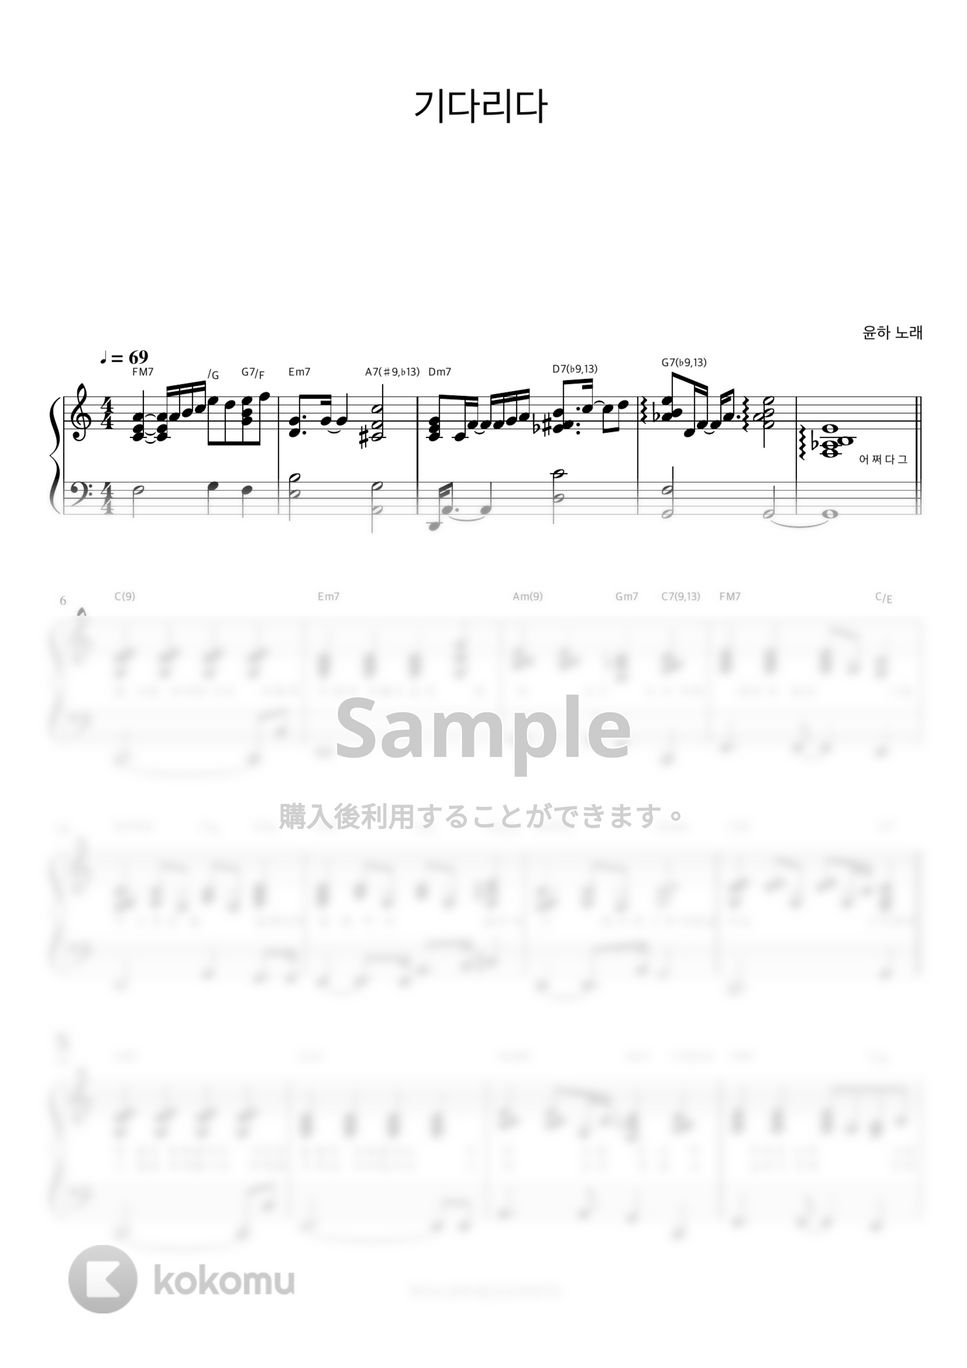 ユンナ - Waiting (伴奏楽譜) by 피아노정류장